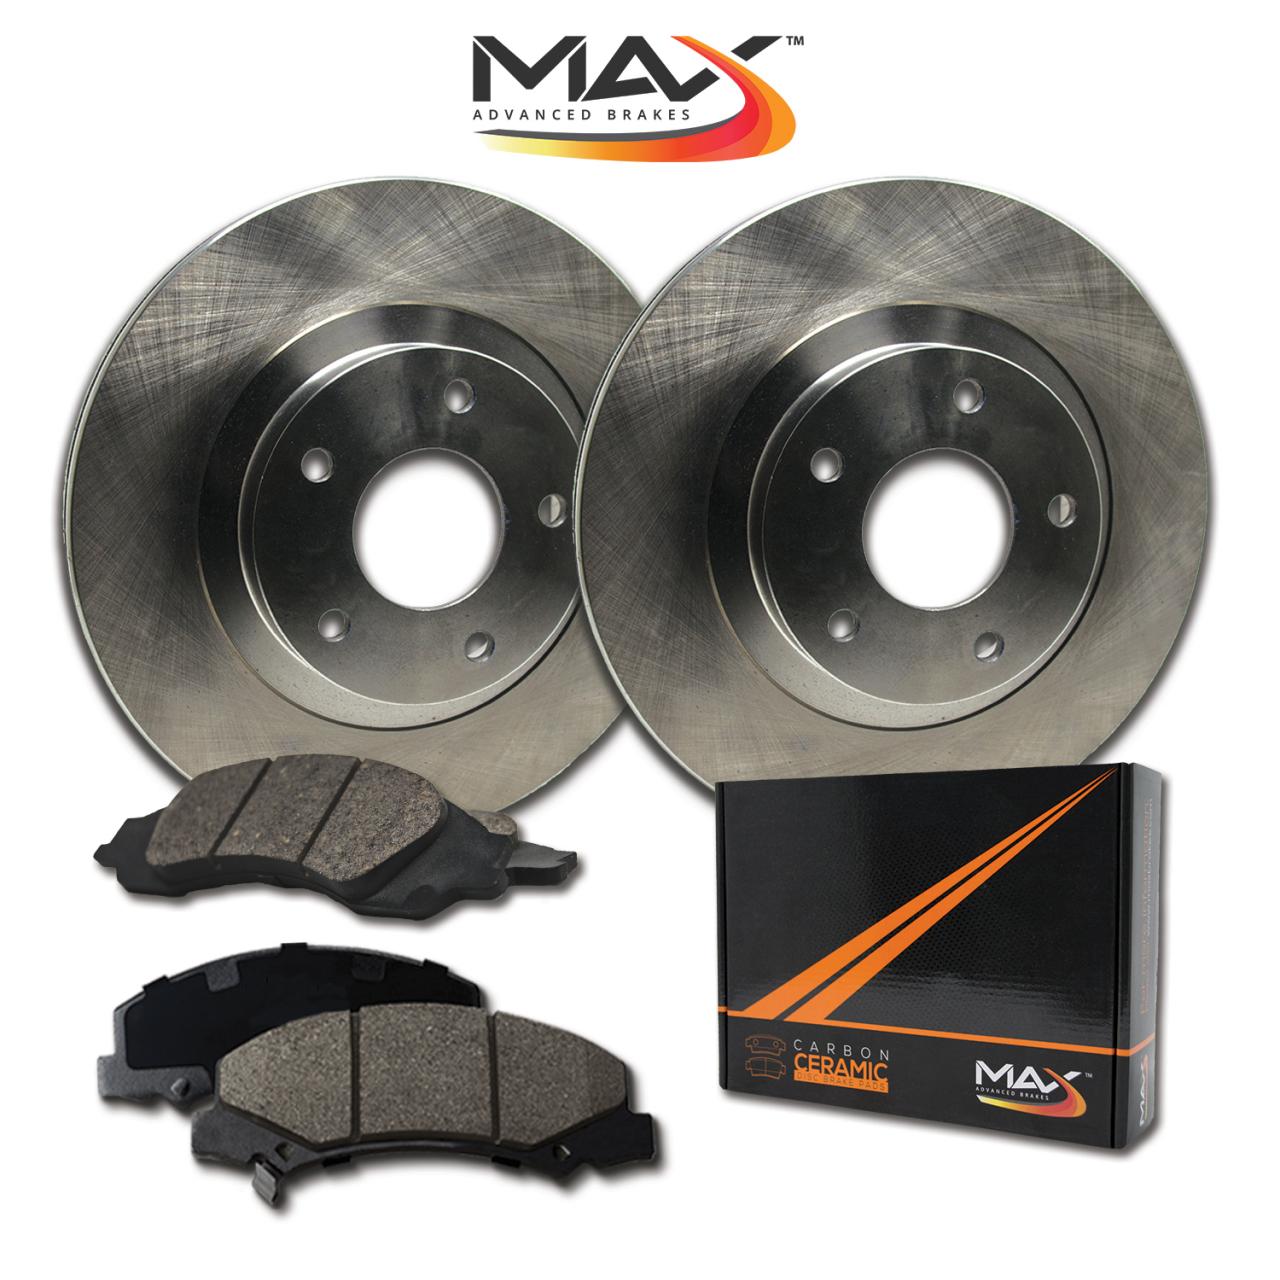 Max Advanced Brakes Brakes | Brakesi